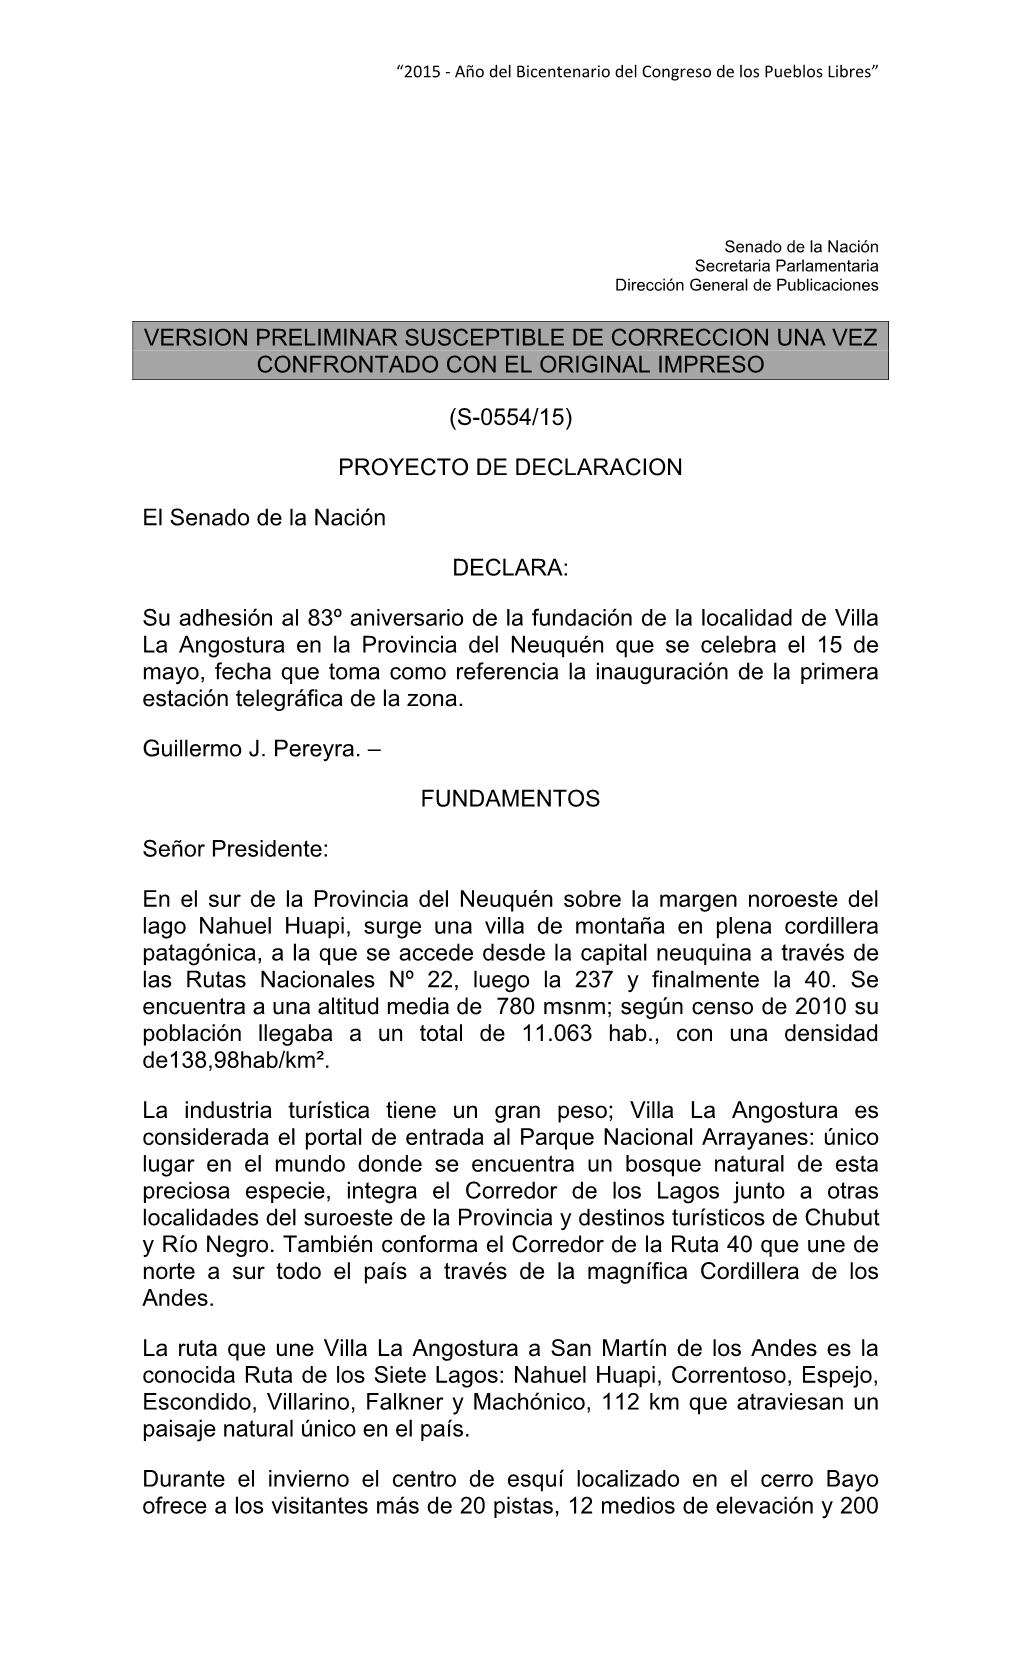 (S-0554/15) PROYECTO DE DECLARACION El